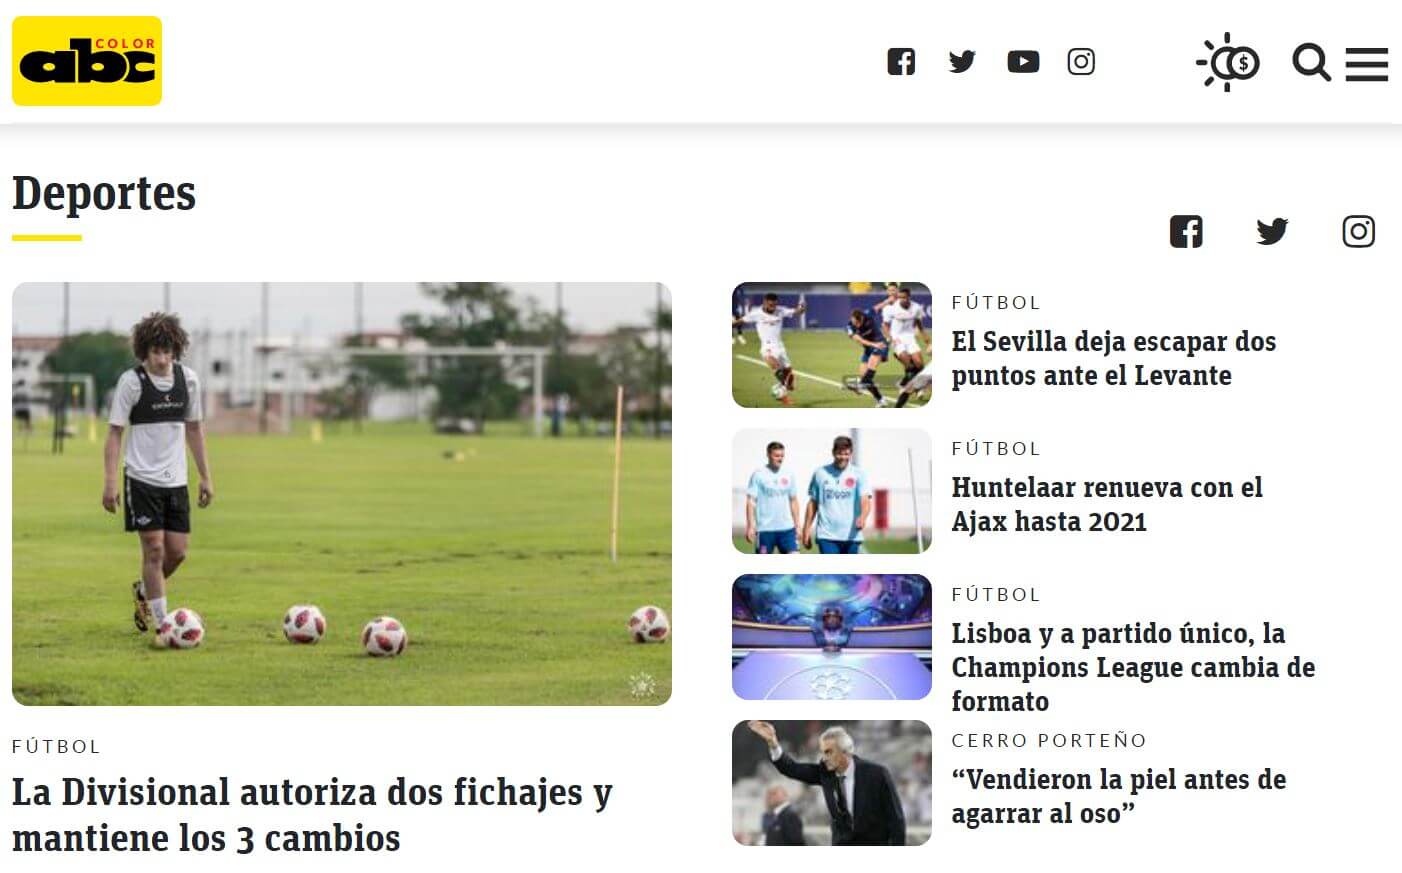 periodicos de paraguay 10 abc deportes website